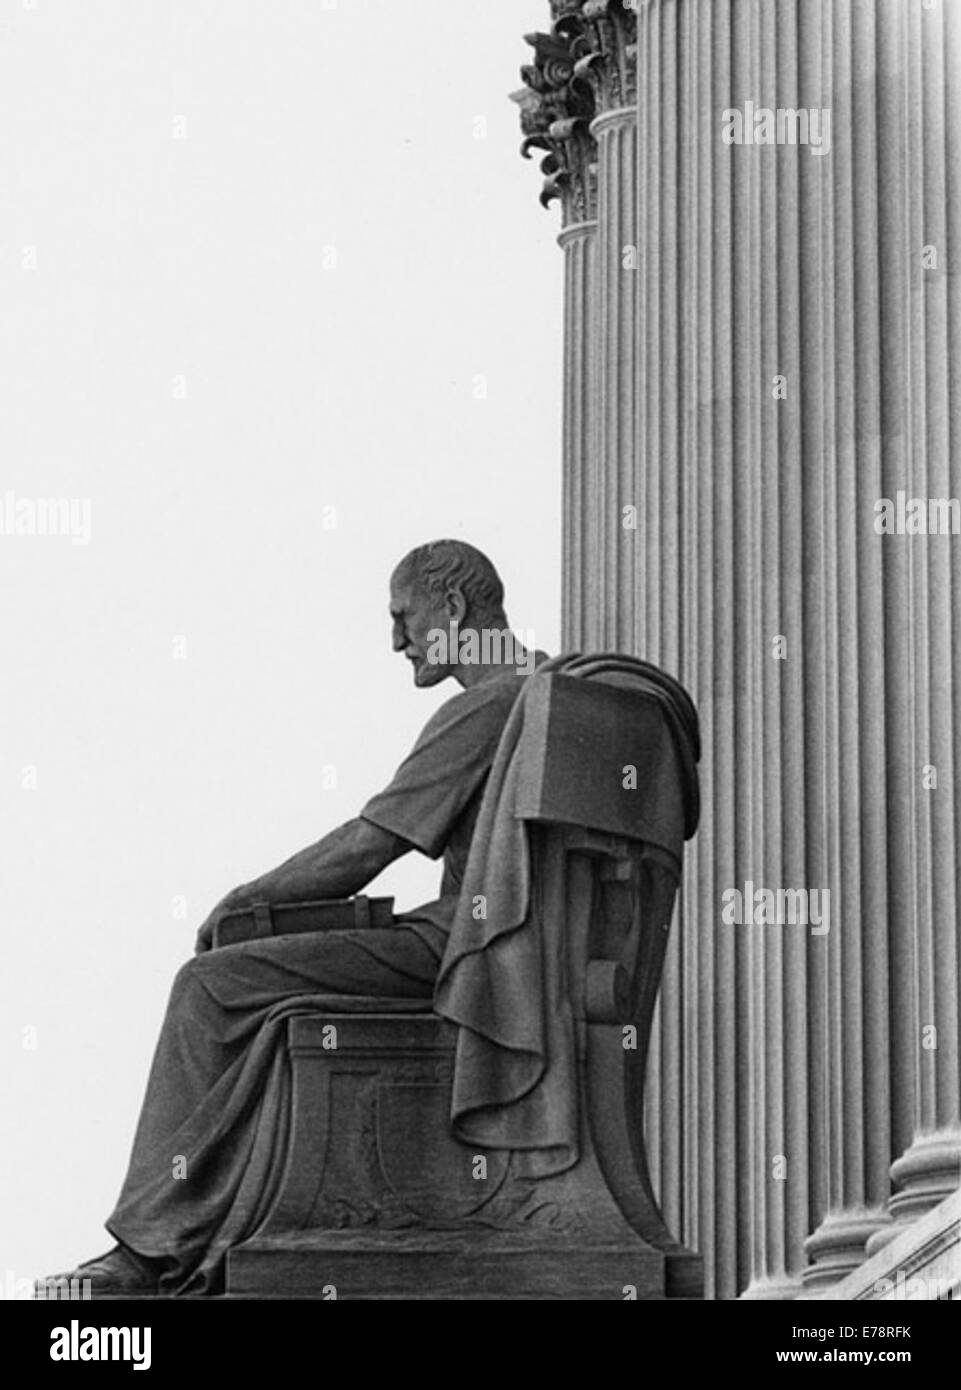 Photographie de la statue d'archives le passé, 1970 Banque D'Images